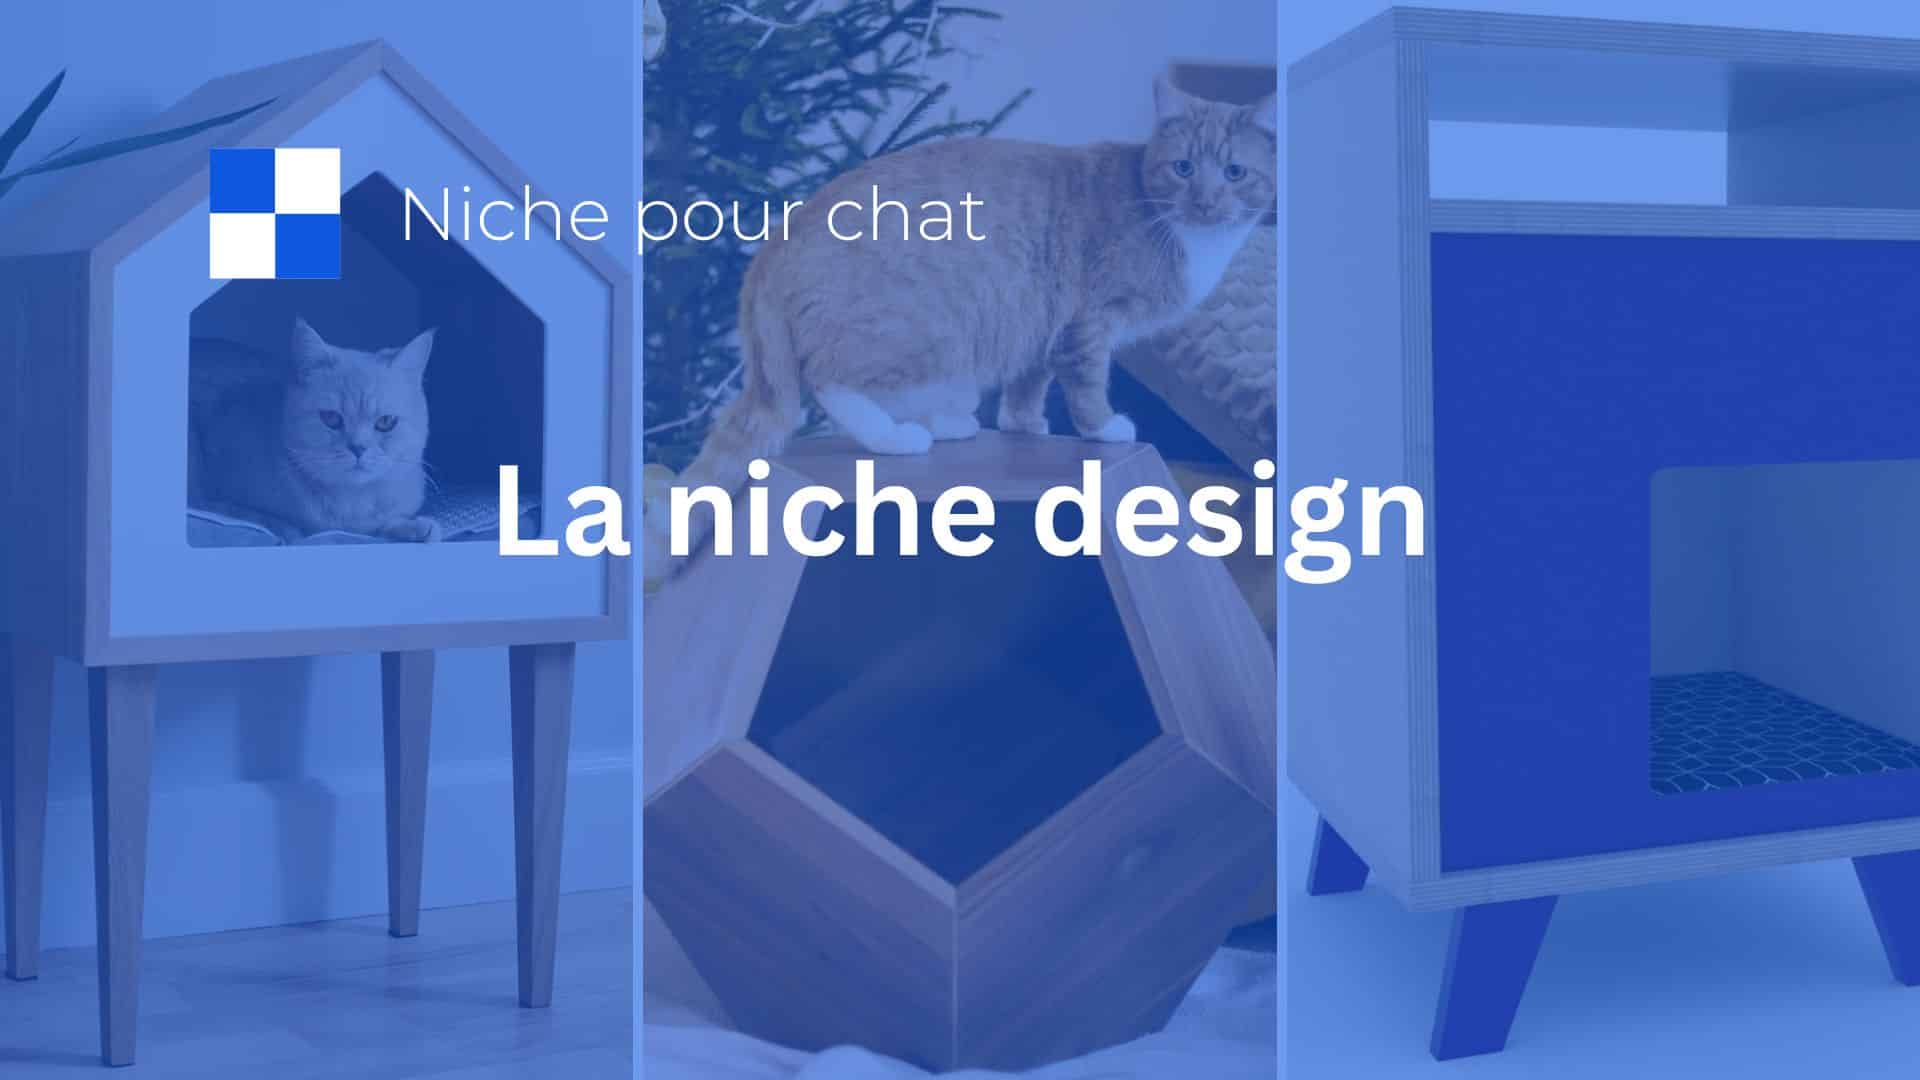 niche pour chat design et moderne